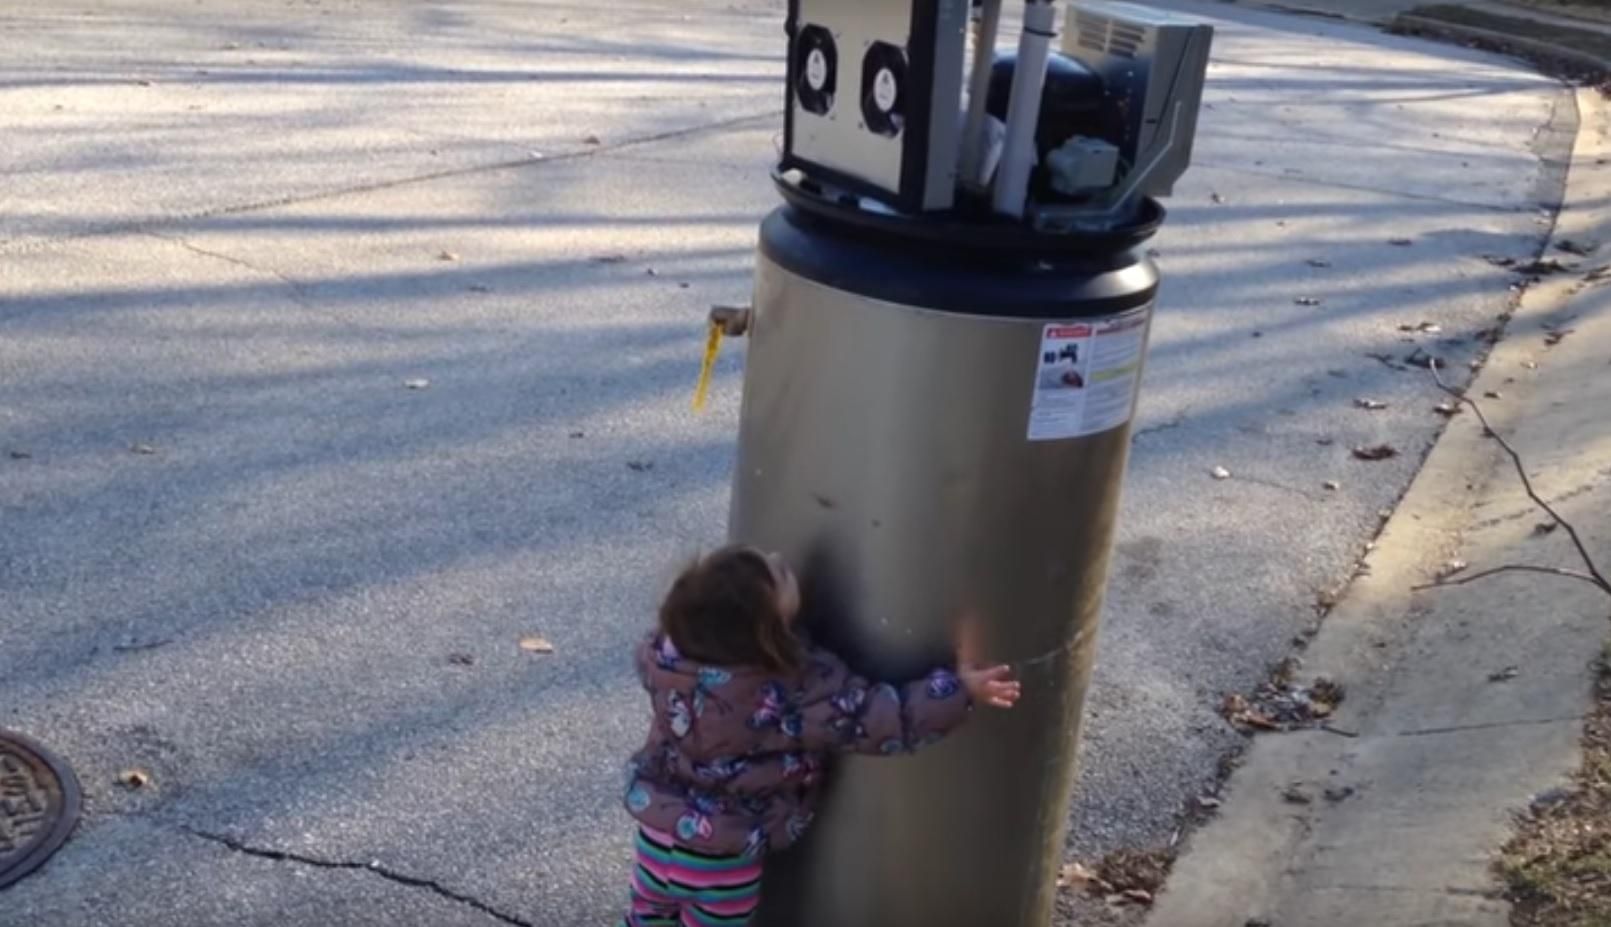 Дівчинка переплутала водонагрівач з роботом та зізналась йому в любові: зворушливе відео